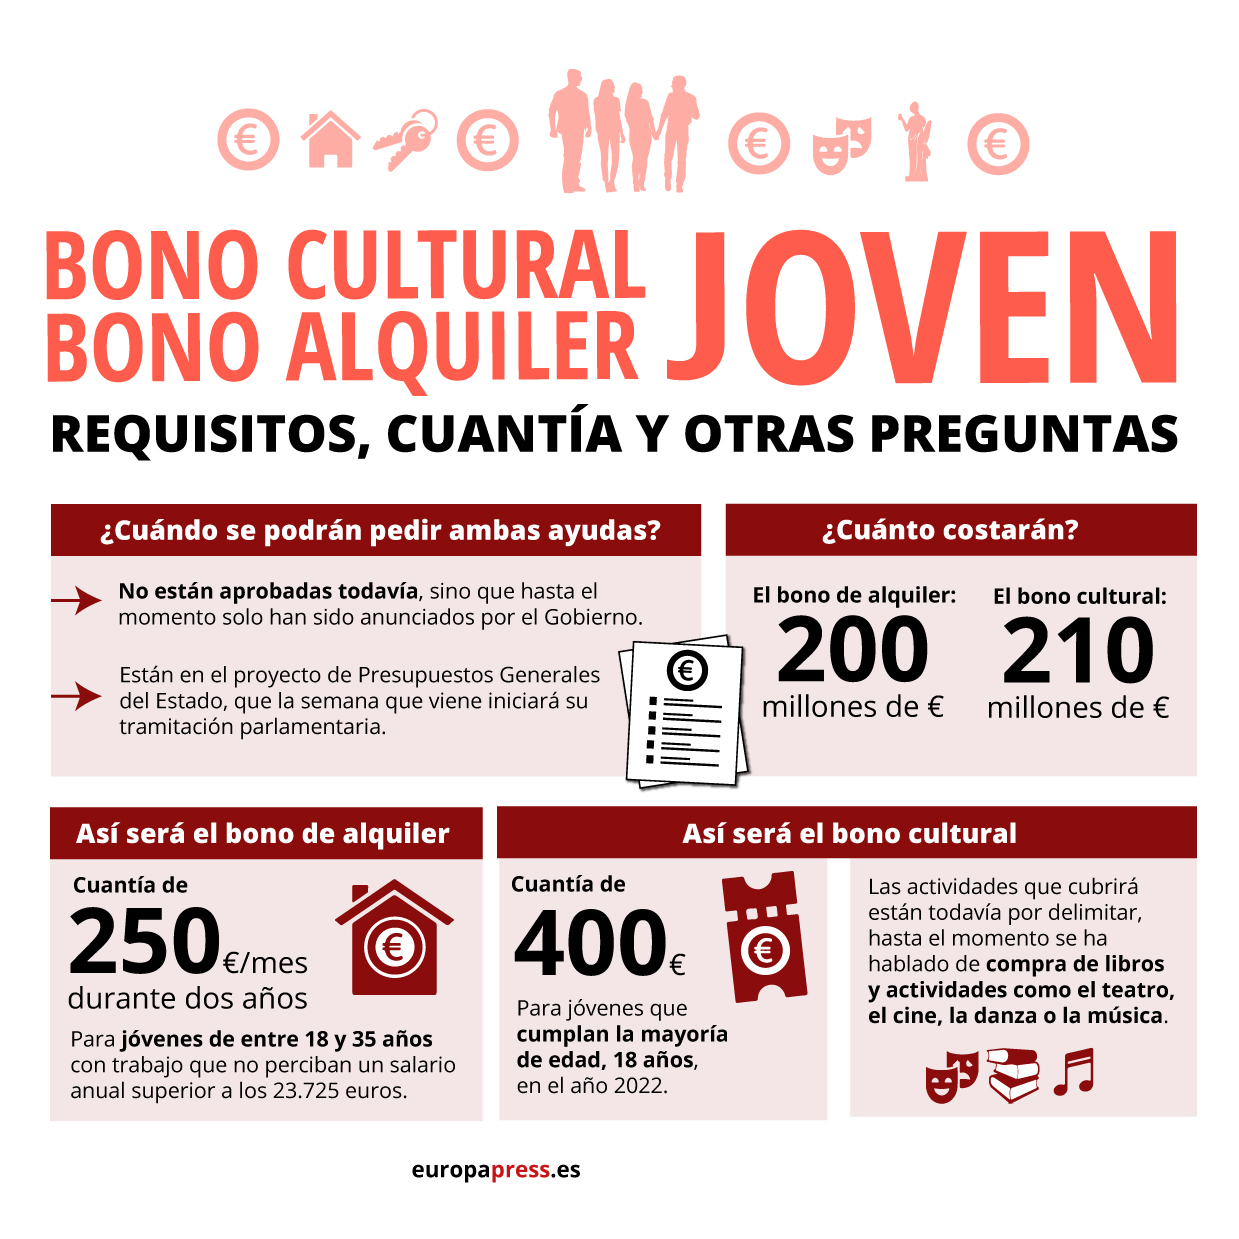 El uso del Bono Cultural Joven alcanza ya los 15 millones de euros